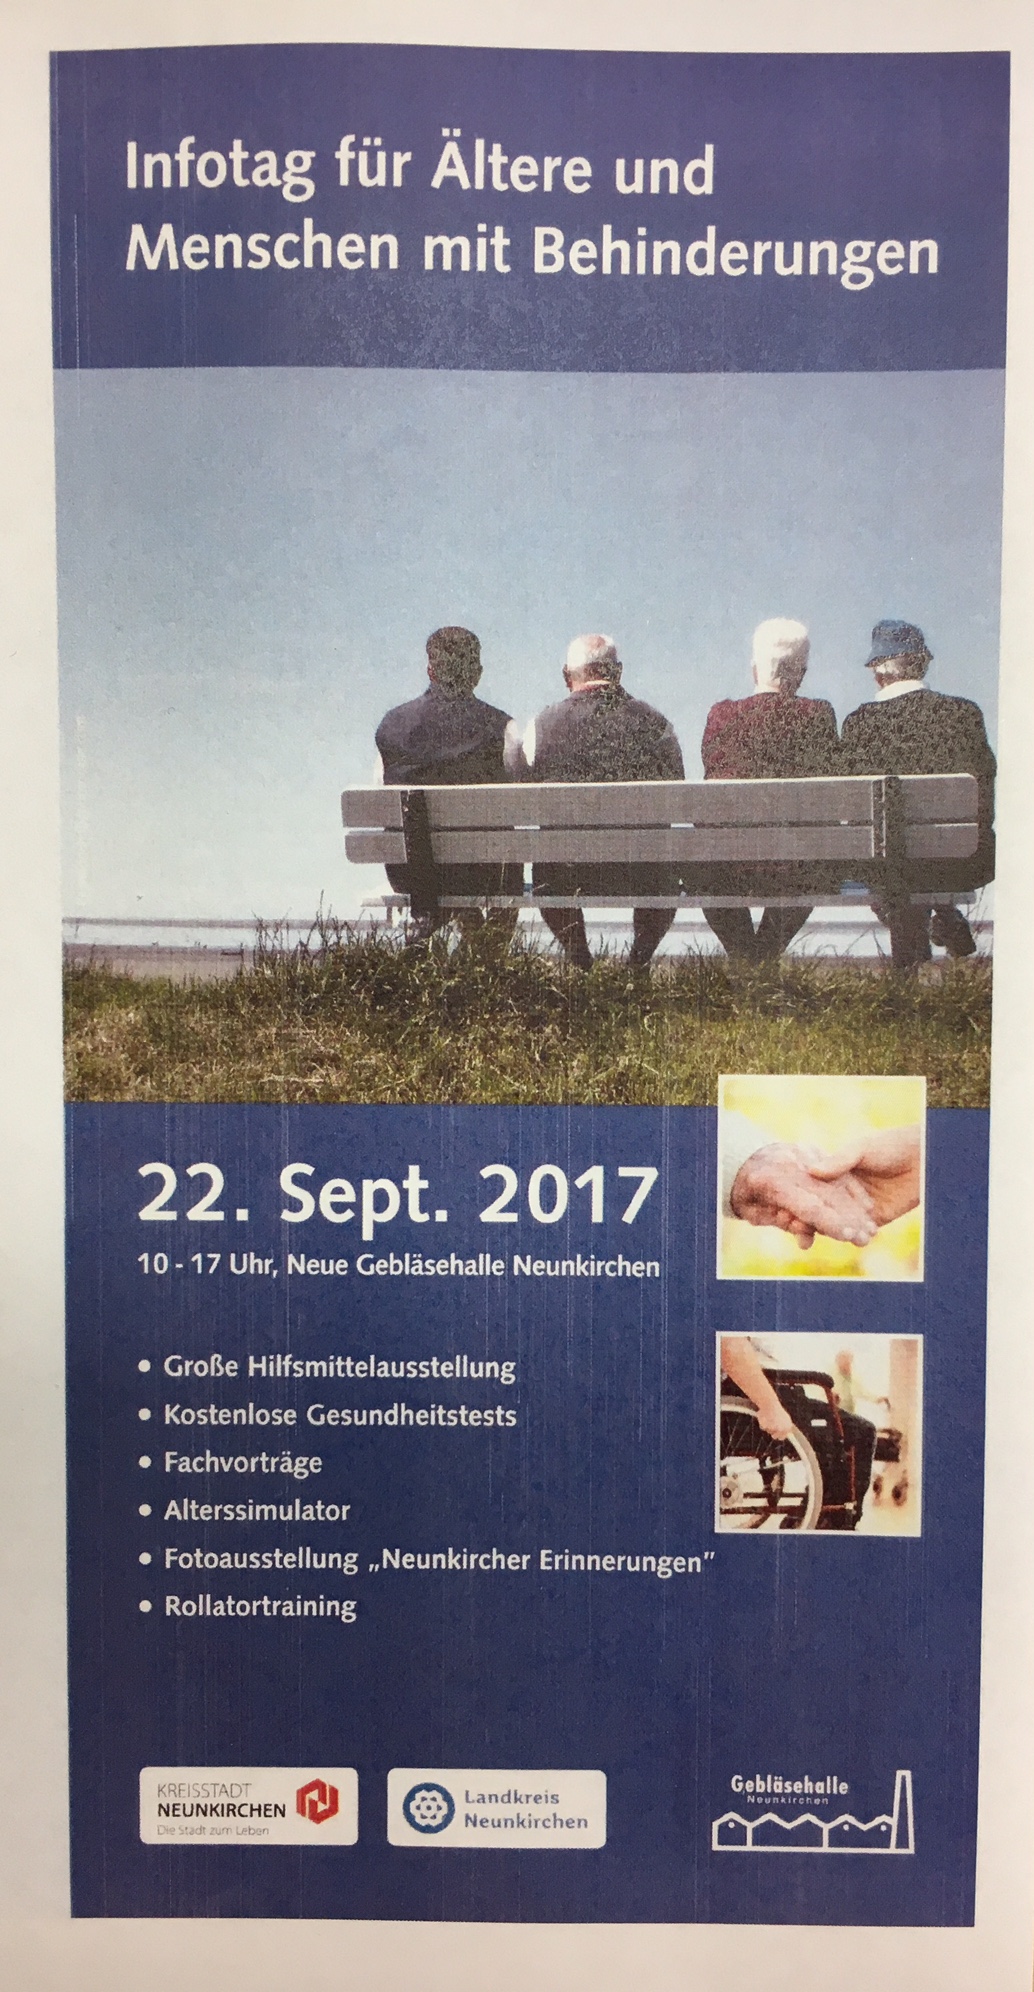 ASB bei Infotag für Ältere und Menschen mit Behinderungen in Neunkirchen